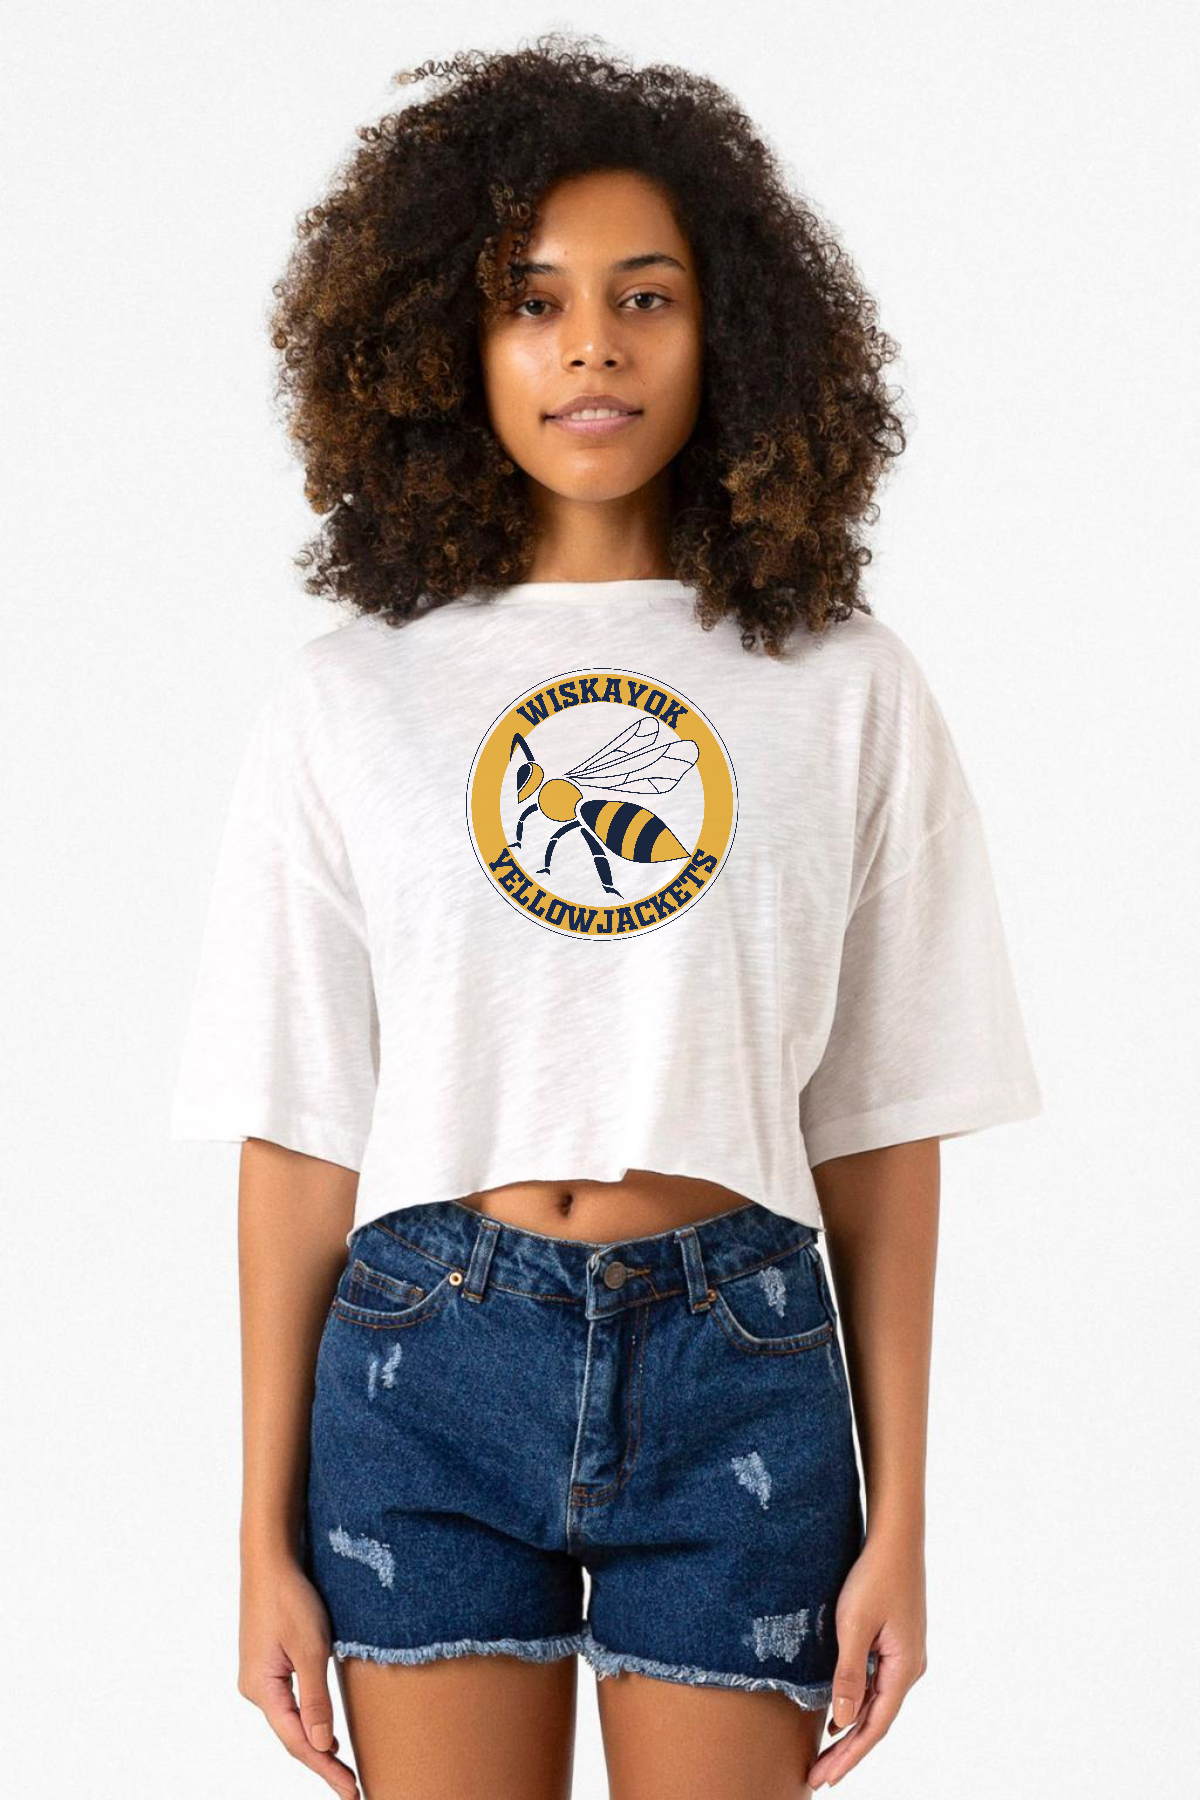 Wiskayok Yellowjackets Logo Beyaz Kırçıllı Kadın Crop Tshirt